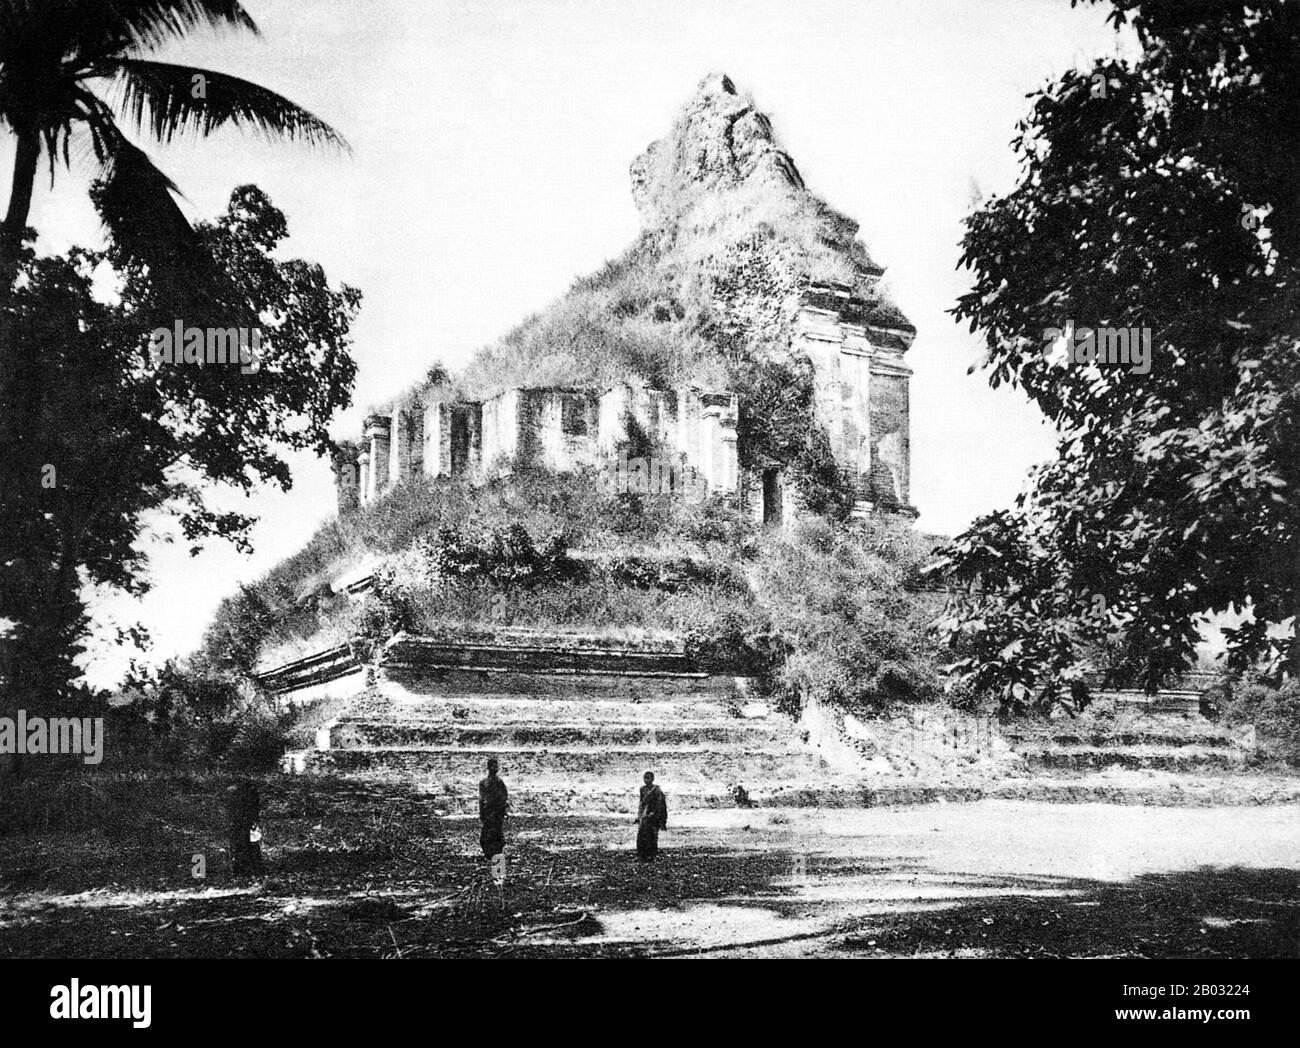 Wat Chedi Luang se traduit littéralement du thaï comme «maîtrise du Grand Stupa». La construction du temple a commencé à la fin du XIVe siècle lorsque le Royaume Lan Na était dans son premier. Le roi Saen Muang Ma (1385-1401) l'avait voulu comme site d'un grand reliquaire pour enchâsser les cendres de son père, le roi Ku Na (1355-85). Aujourd'hui, c'est le site du Lak Muang ou du pilier de la ville. La cérémonie annuelle d'Inthakin se déroule dans les limites du temple. Chiang Mai (signifiant « nouvelle ville »), parfois écrit comme « Chiengmai » ou « Chiangmai », est la ville la plus importante et la plus culturellement significative de northe Banque D'Images